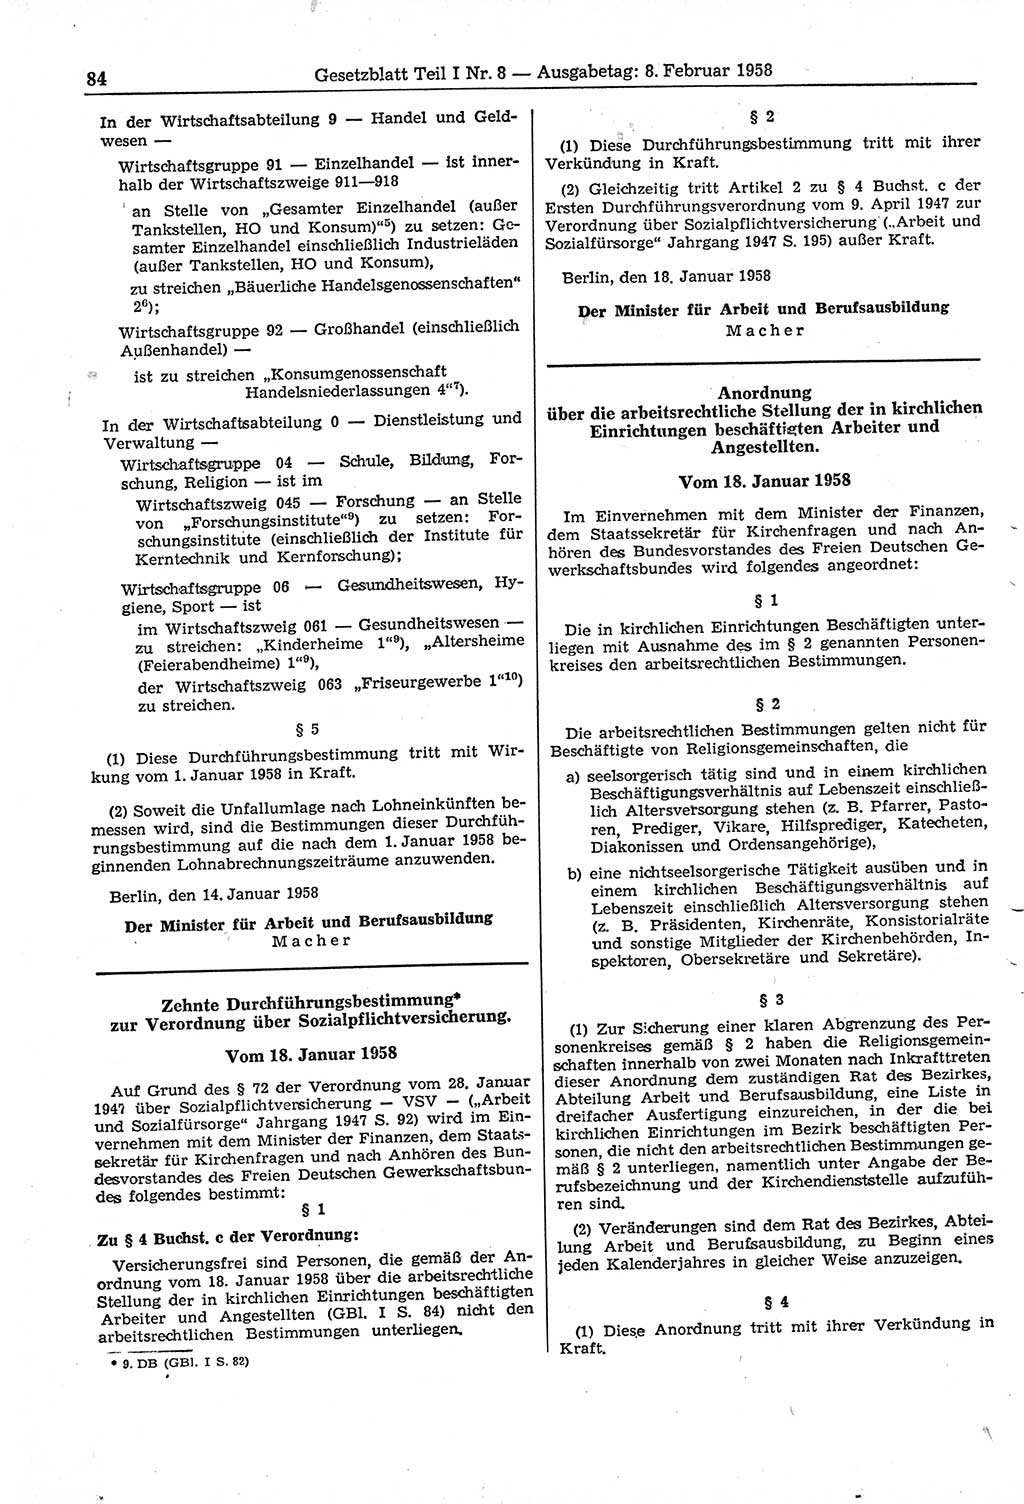 Gesetzblatt (GBl.) der Deutschen Demokratischen Republik (DDR) Teil Ⅰ 1958, Seite 84 (GBl. DDR Ⅰ 1958, S. 84)